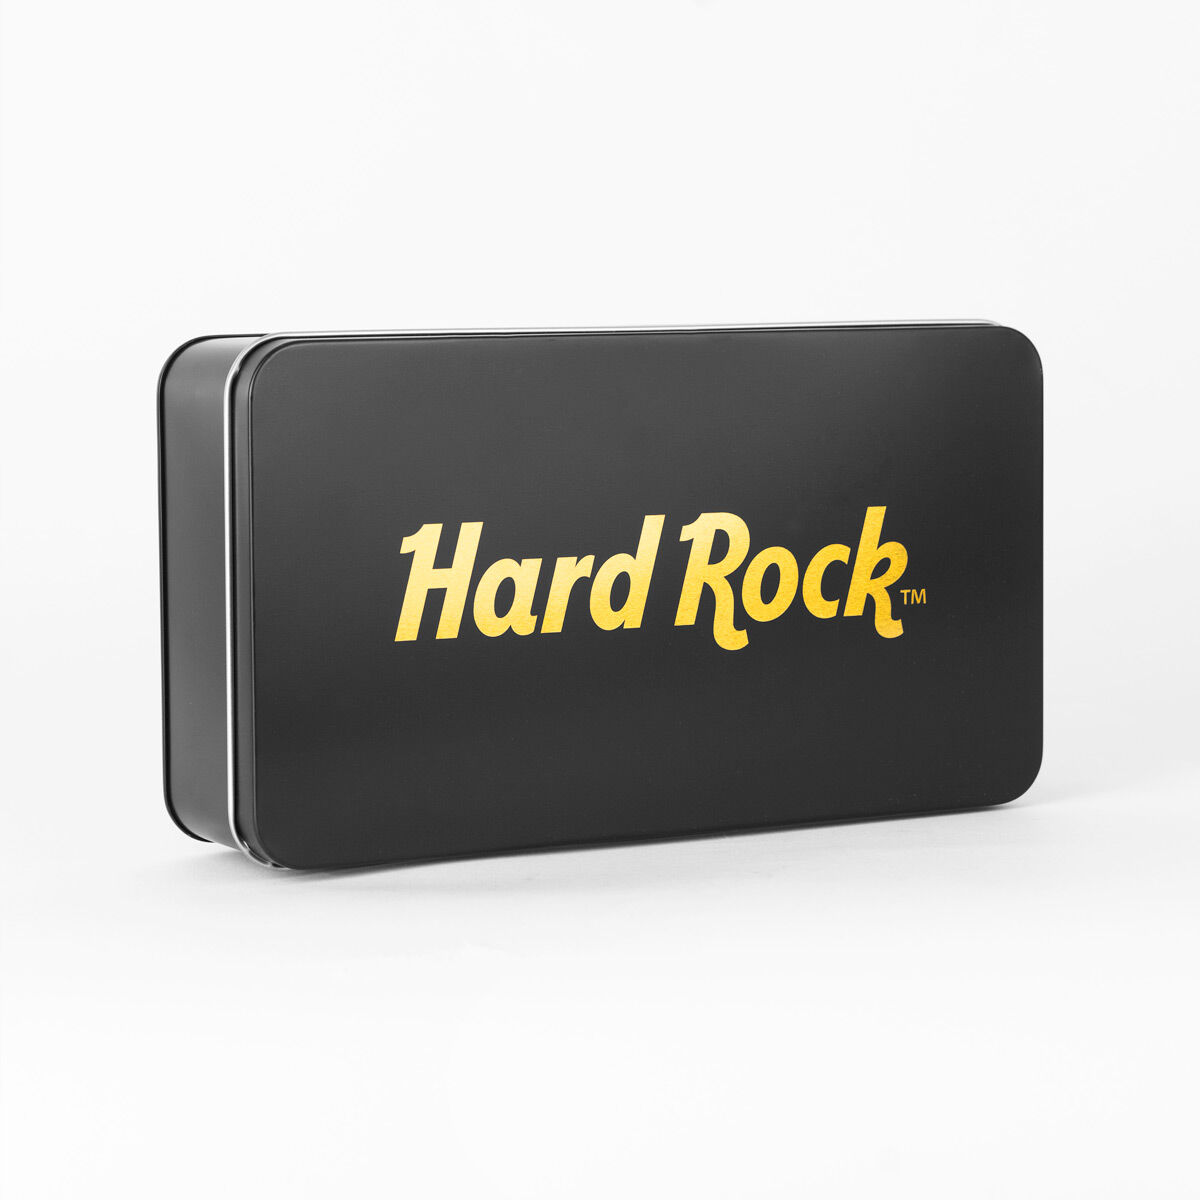 Hard Rock Metallic Tin Poker Set